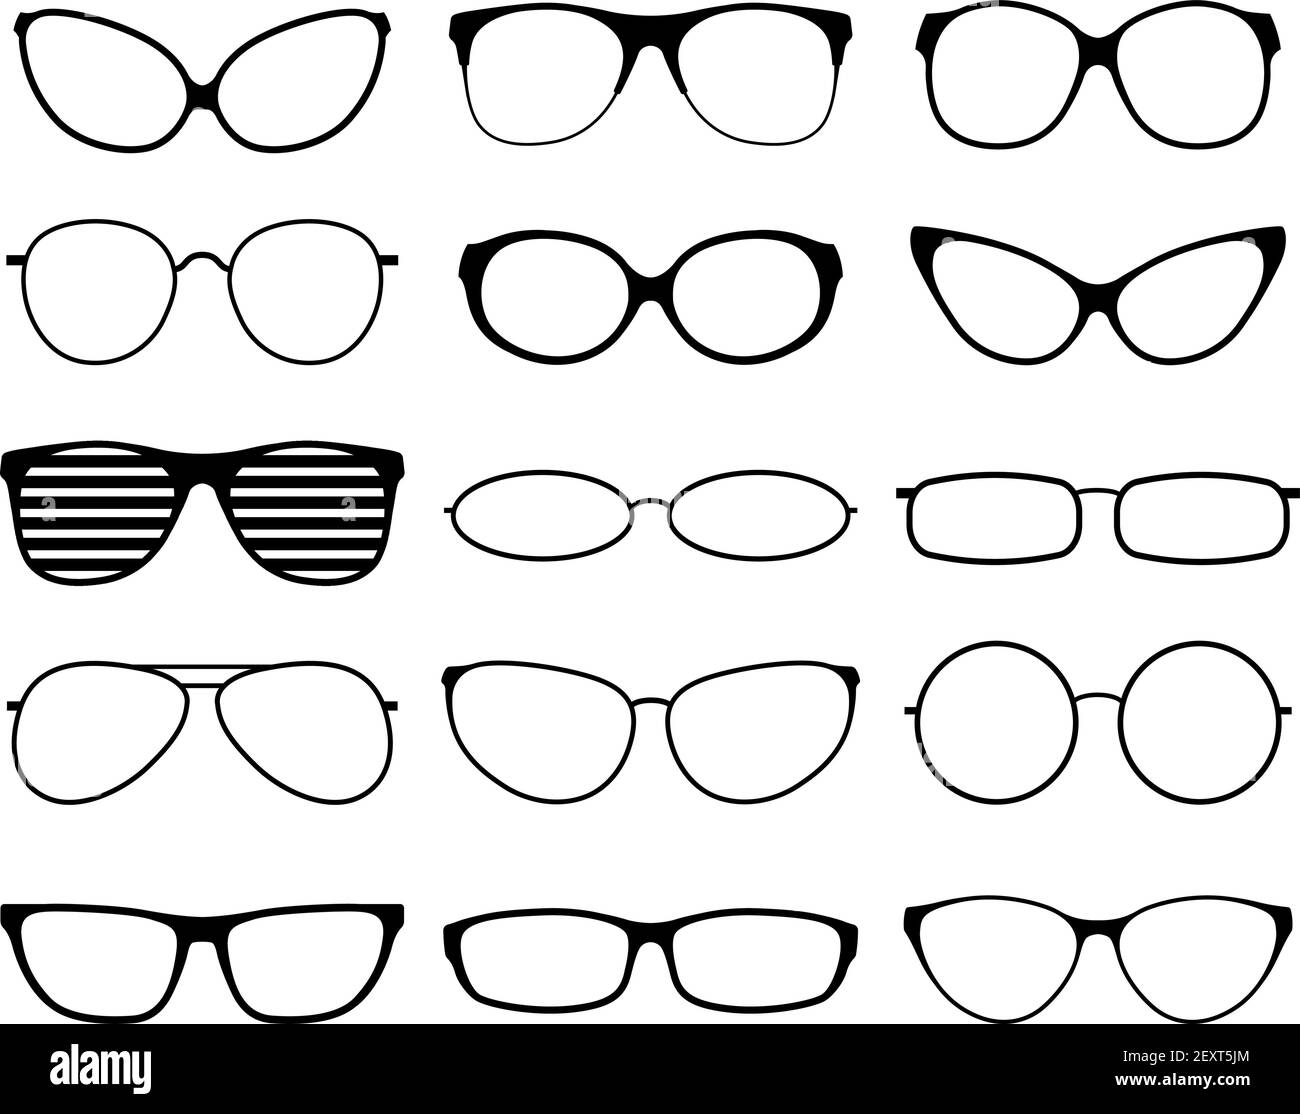 Gafas siluetas. Moda gafas de sol marcos, gafas negras. Geek y hipopótamos. Hombre mujer gafas. Iconos conjunto de lentes de la vista, ilustración del borde los anteojos Imagen Vector